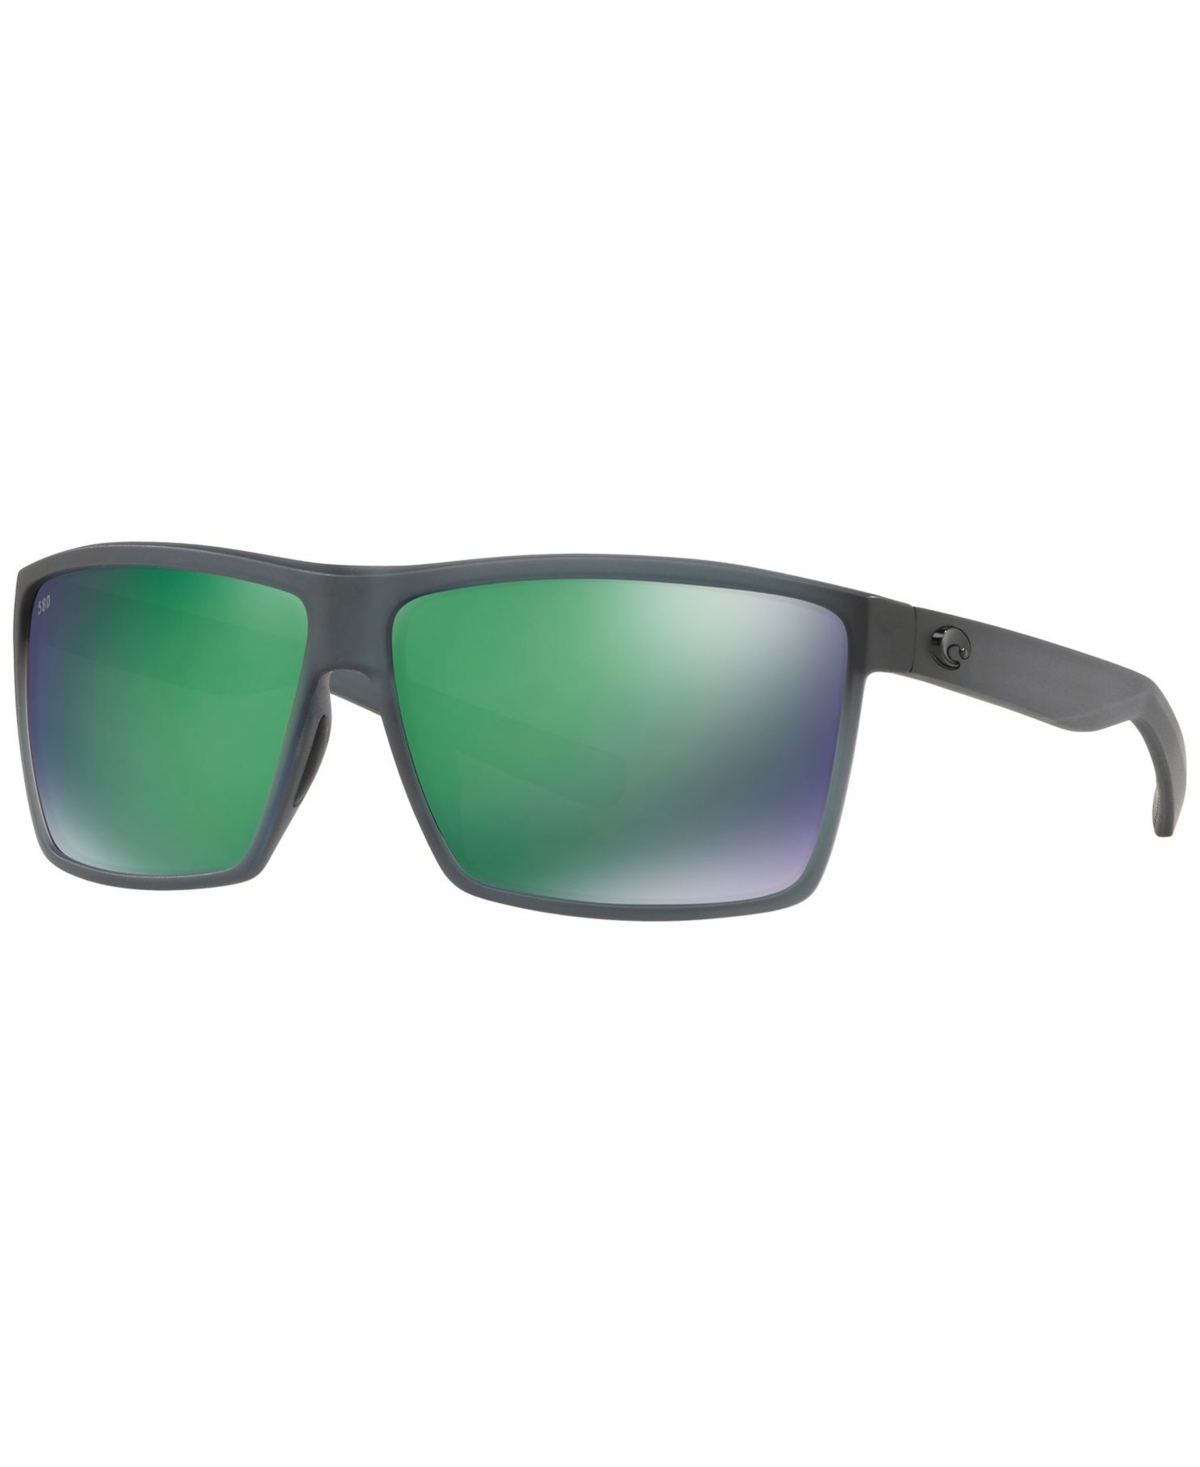 Costa Del Mar Polarized Sunglasses, Rincon 64 In Grey,green Mirror